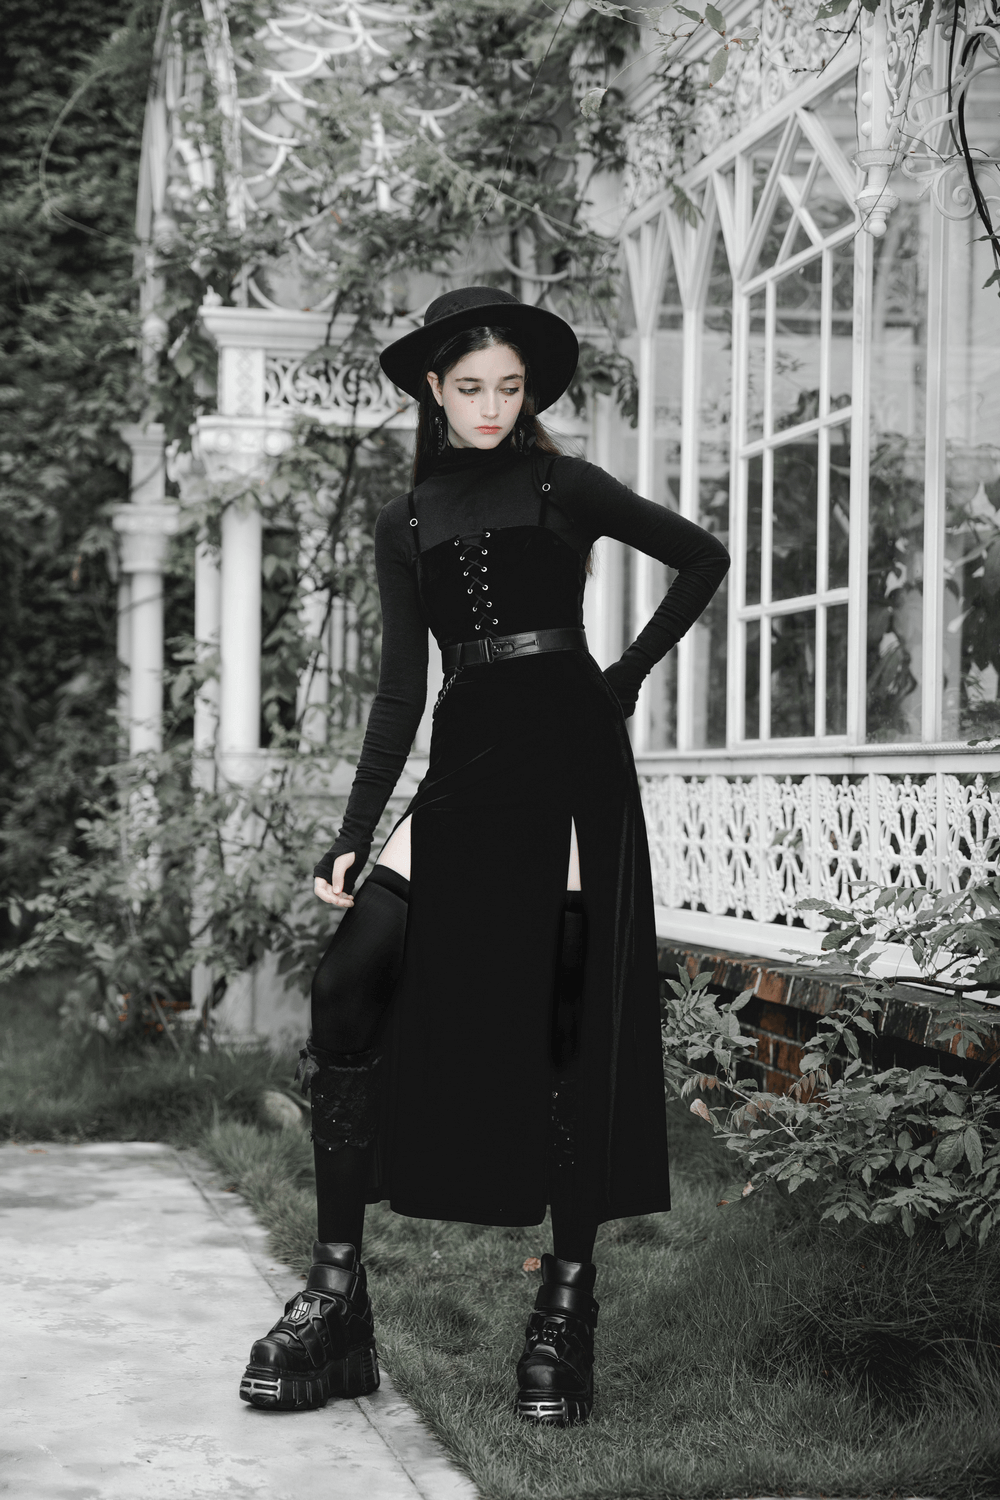 Gothic Women's Velvet Long Dress with Suspenders